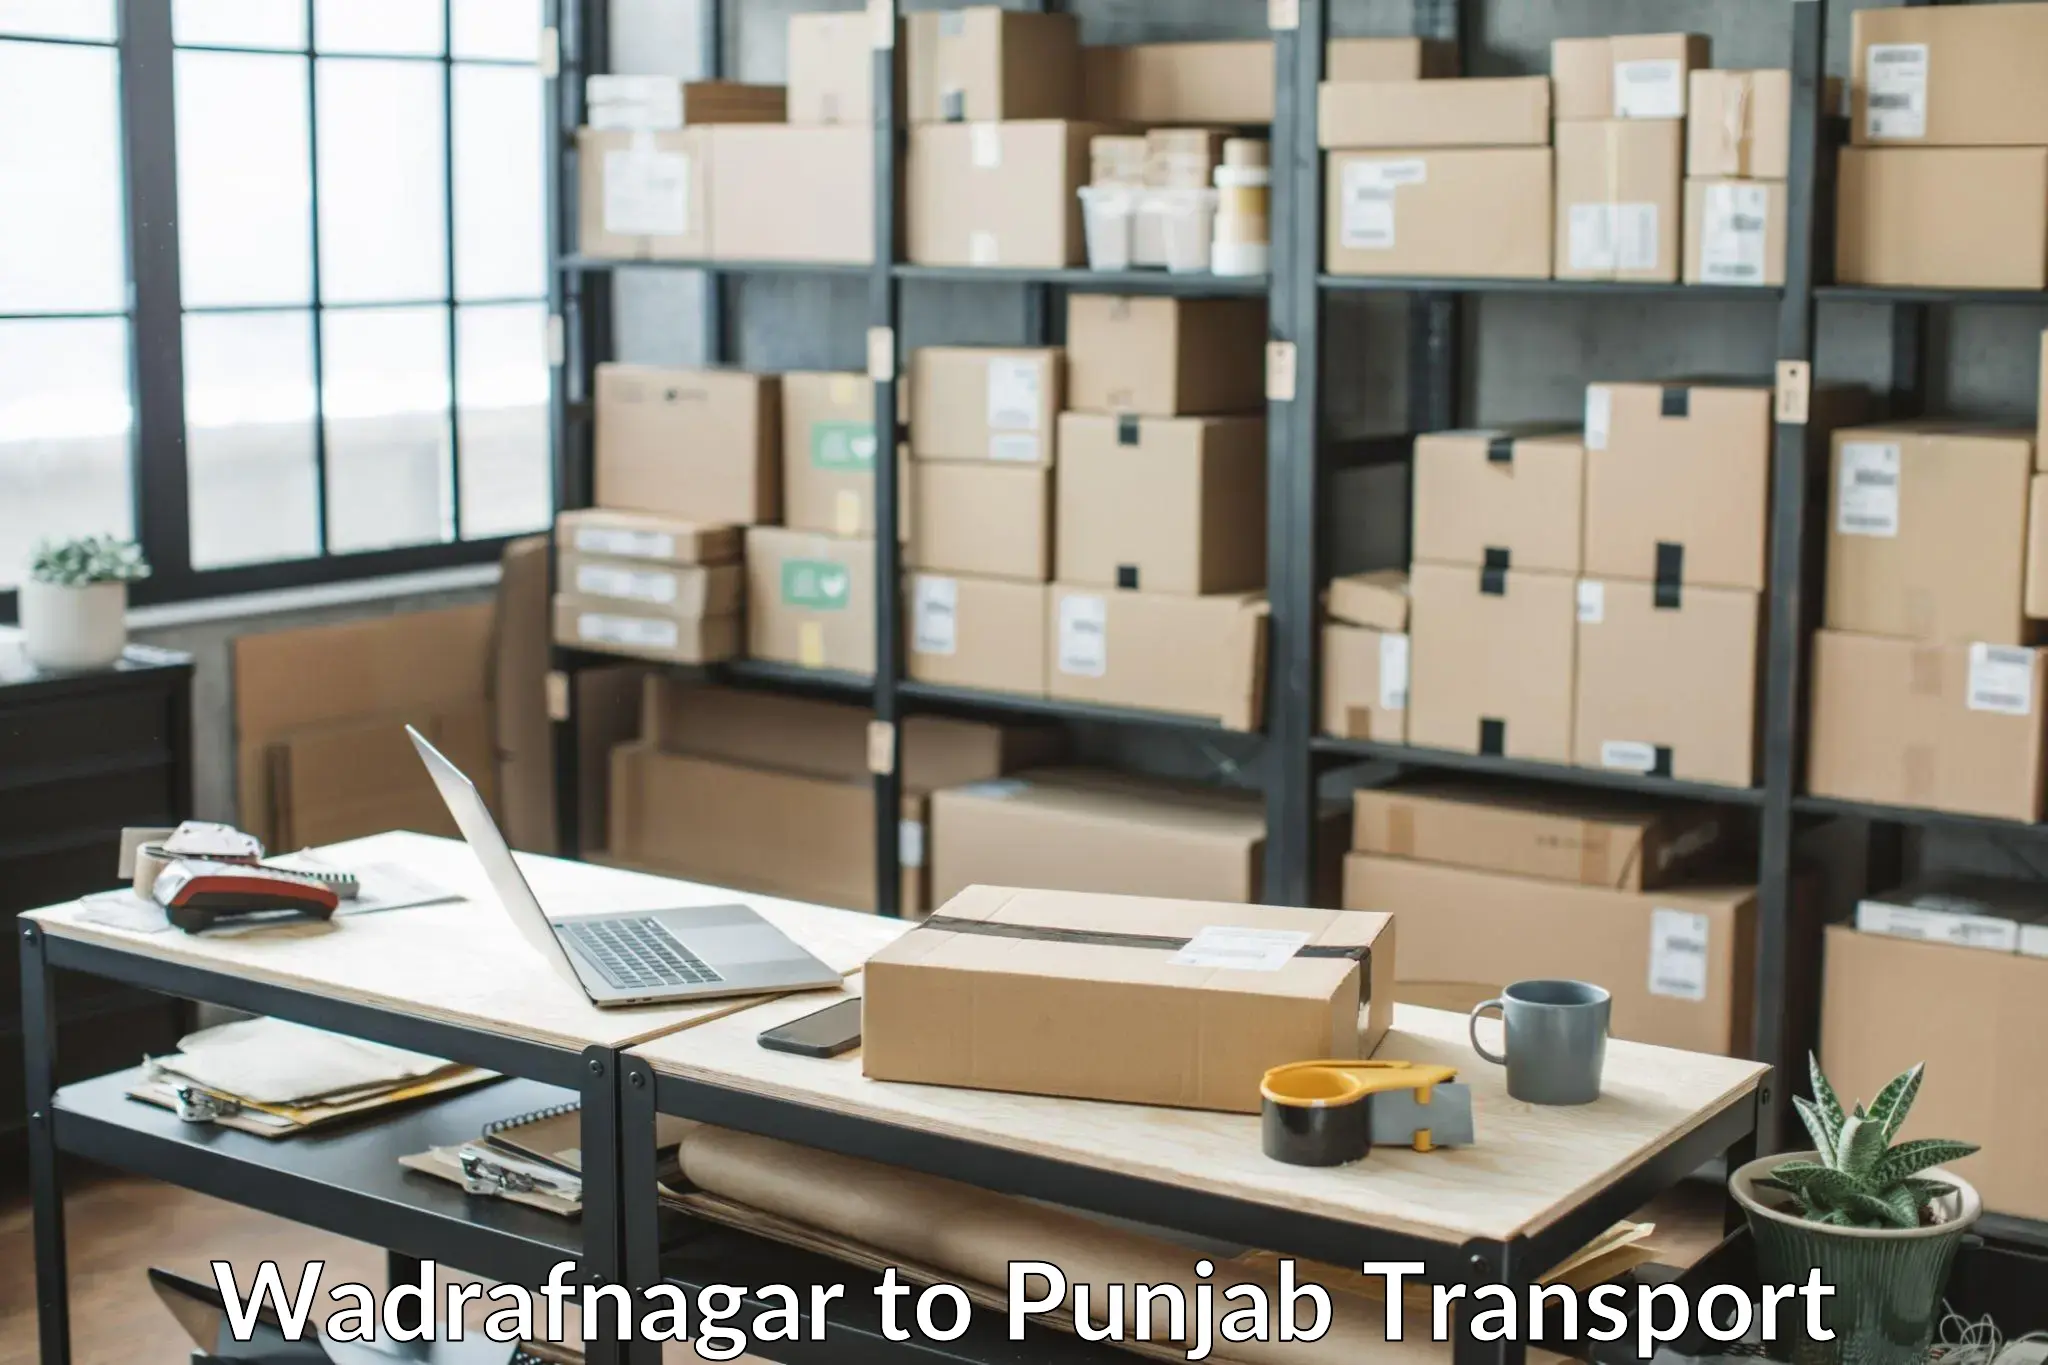 Road transport online services Wadrafnagar to Rajpura